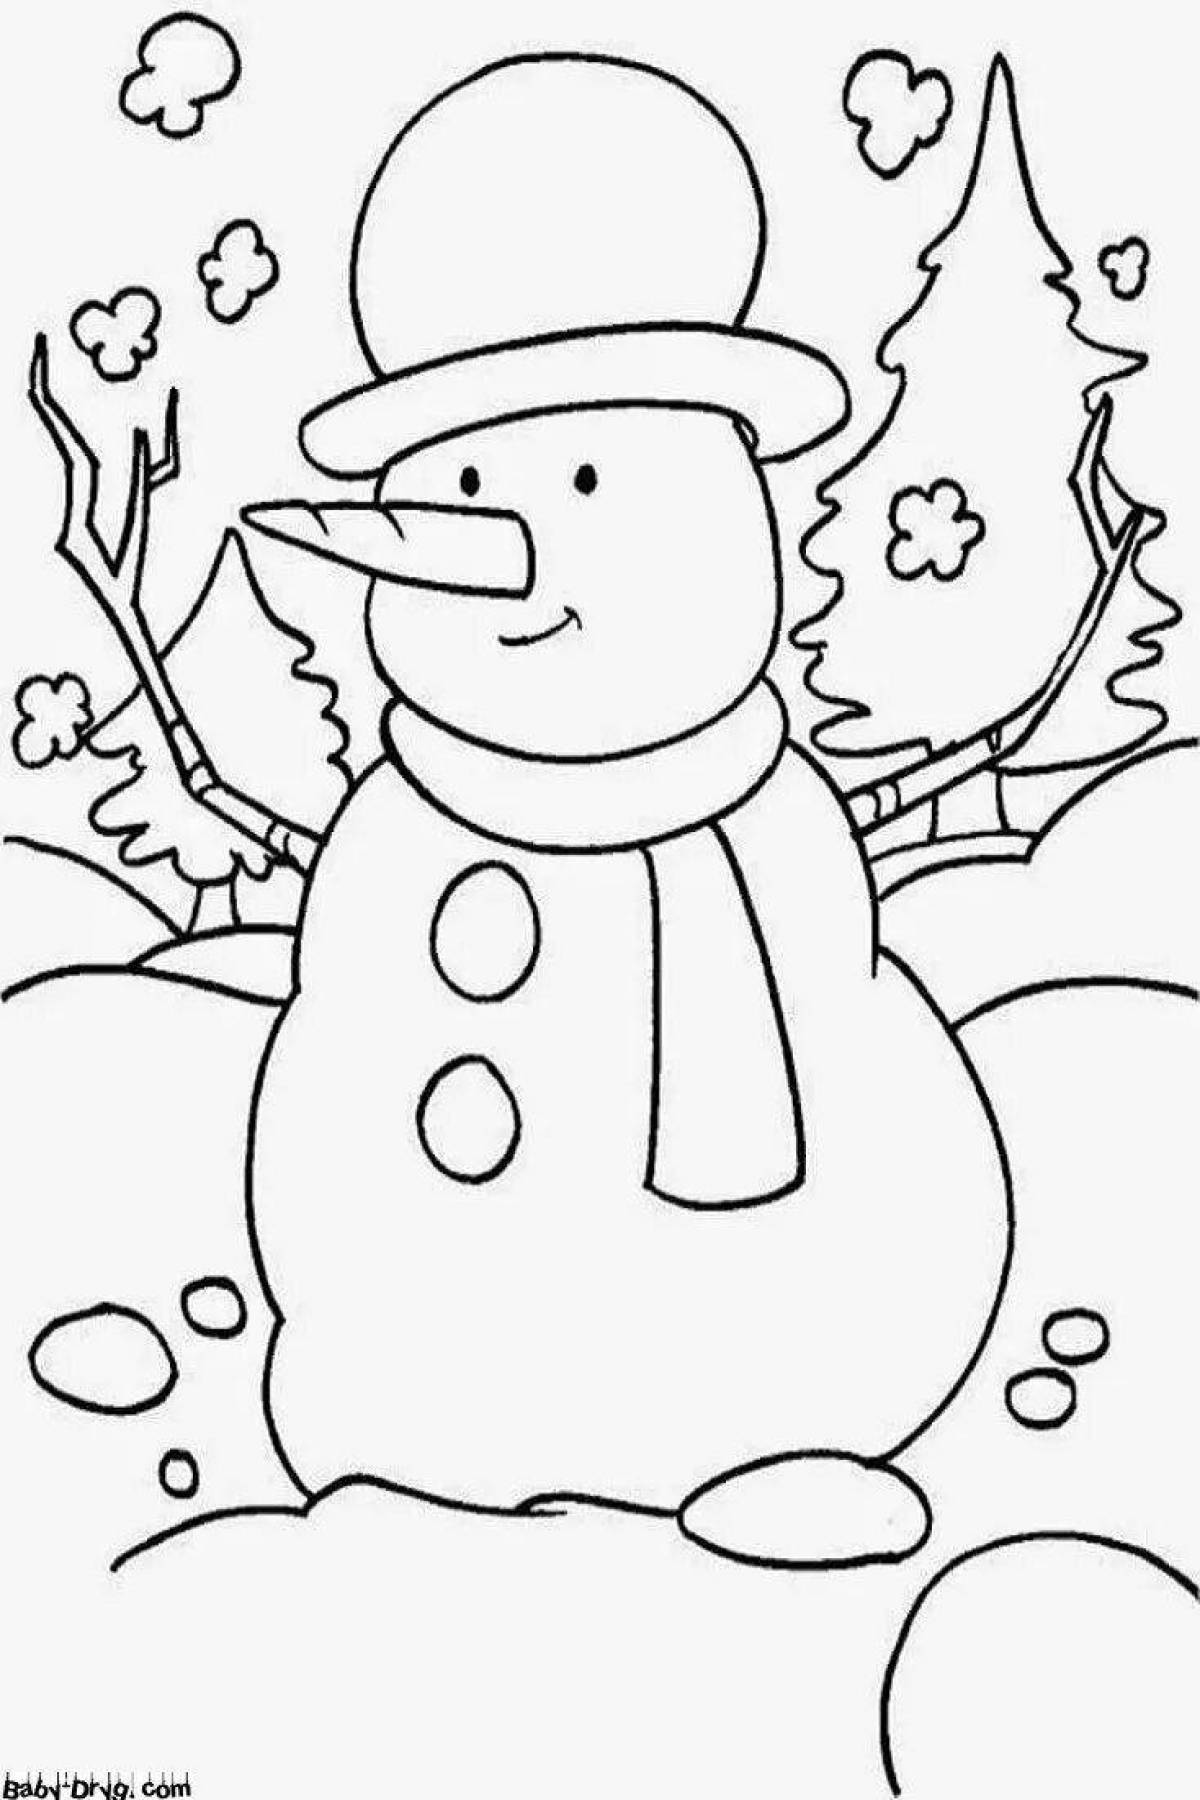 Юмористическая детская раскраска снеговик